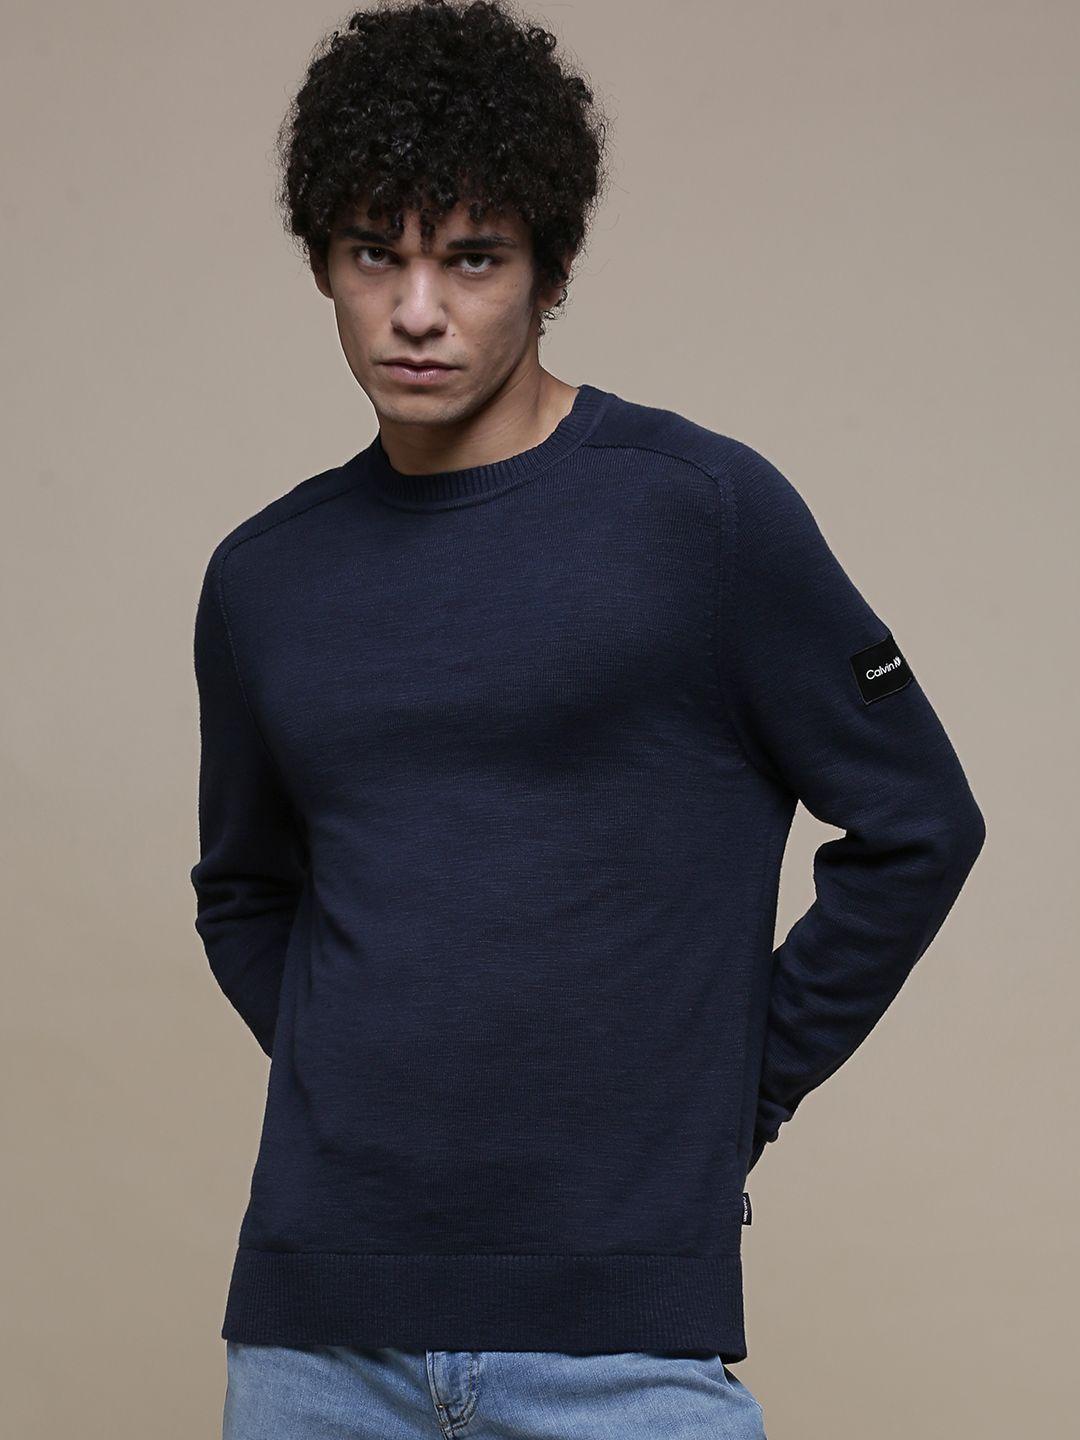 calvin klein jeans men navy blue slub textured pullover sweater